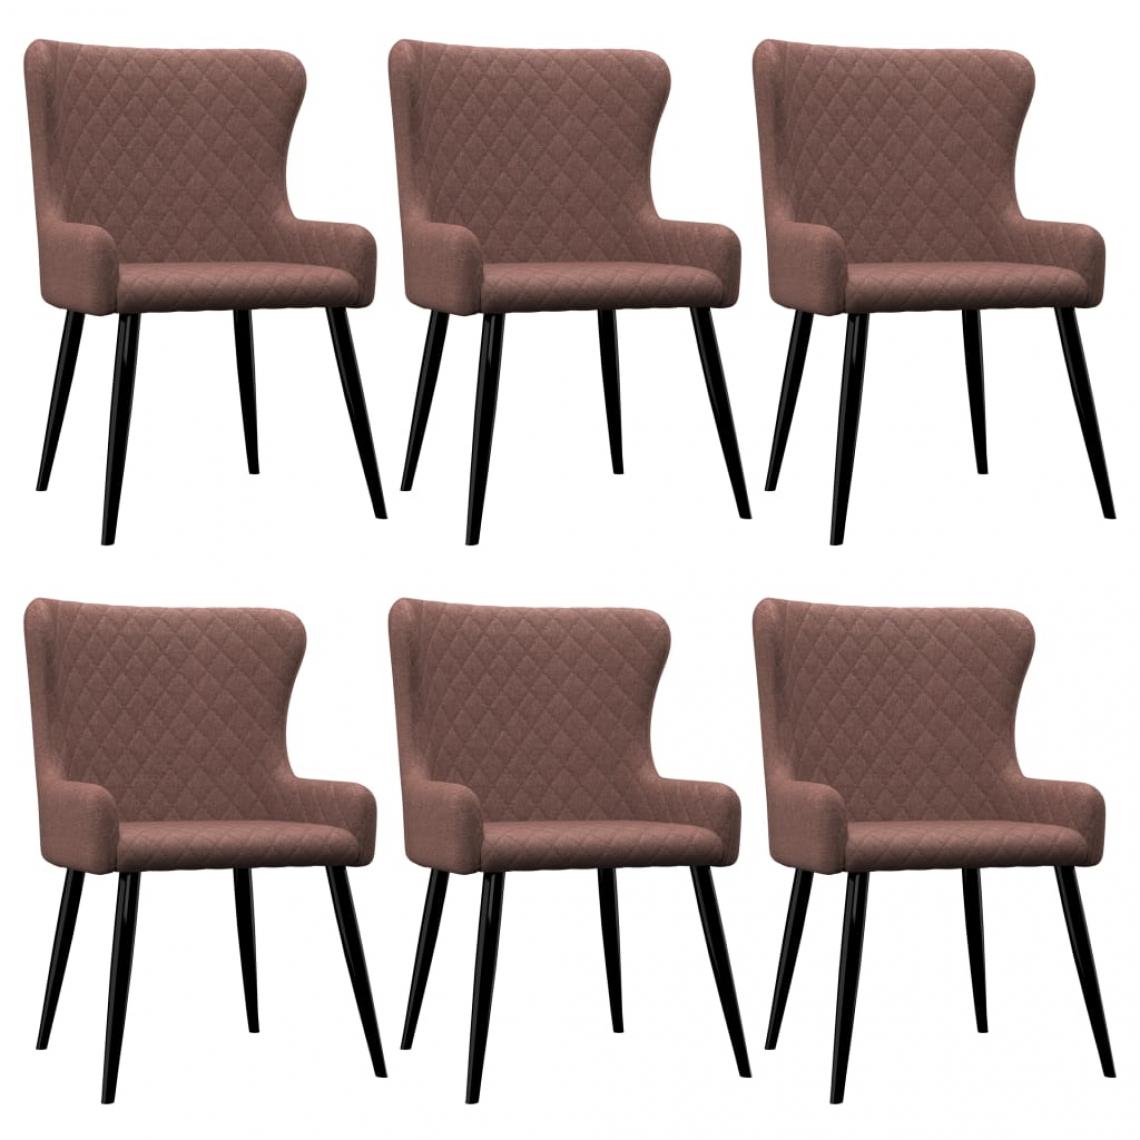 Decoshop26 - Lot de 6 chaises de salle à manger cuisine design moderne tissu marron CDS022637 - Chaises